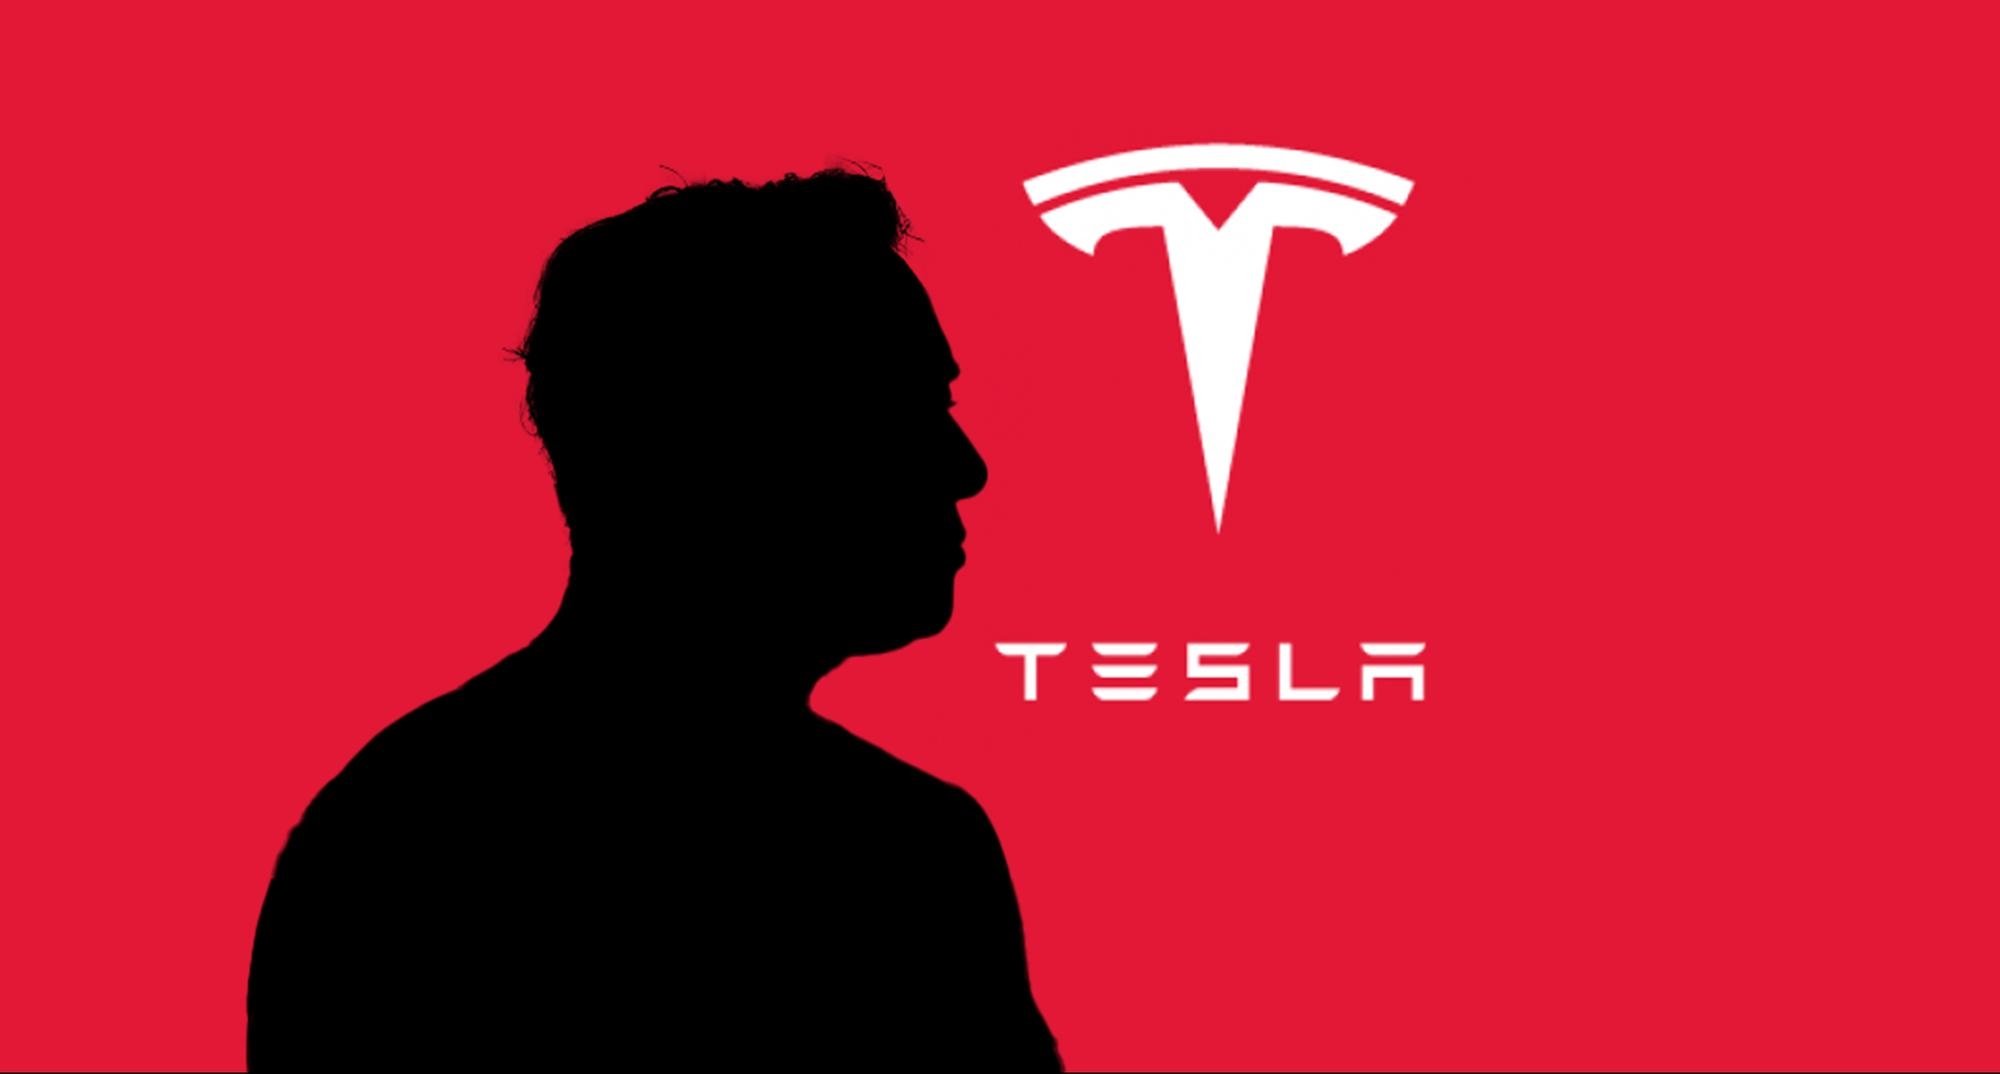 Tesla continua com valores em queda na produção e entrega de viaturas